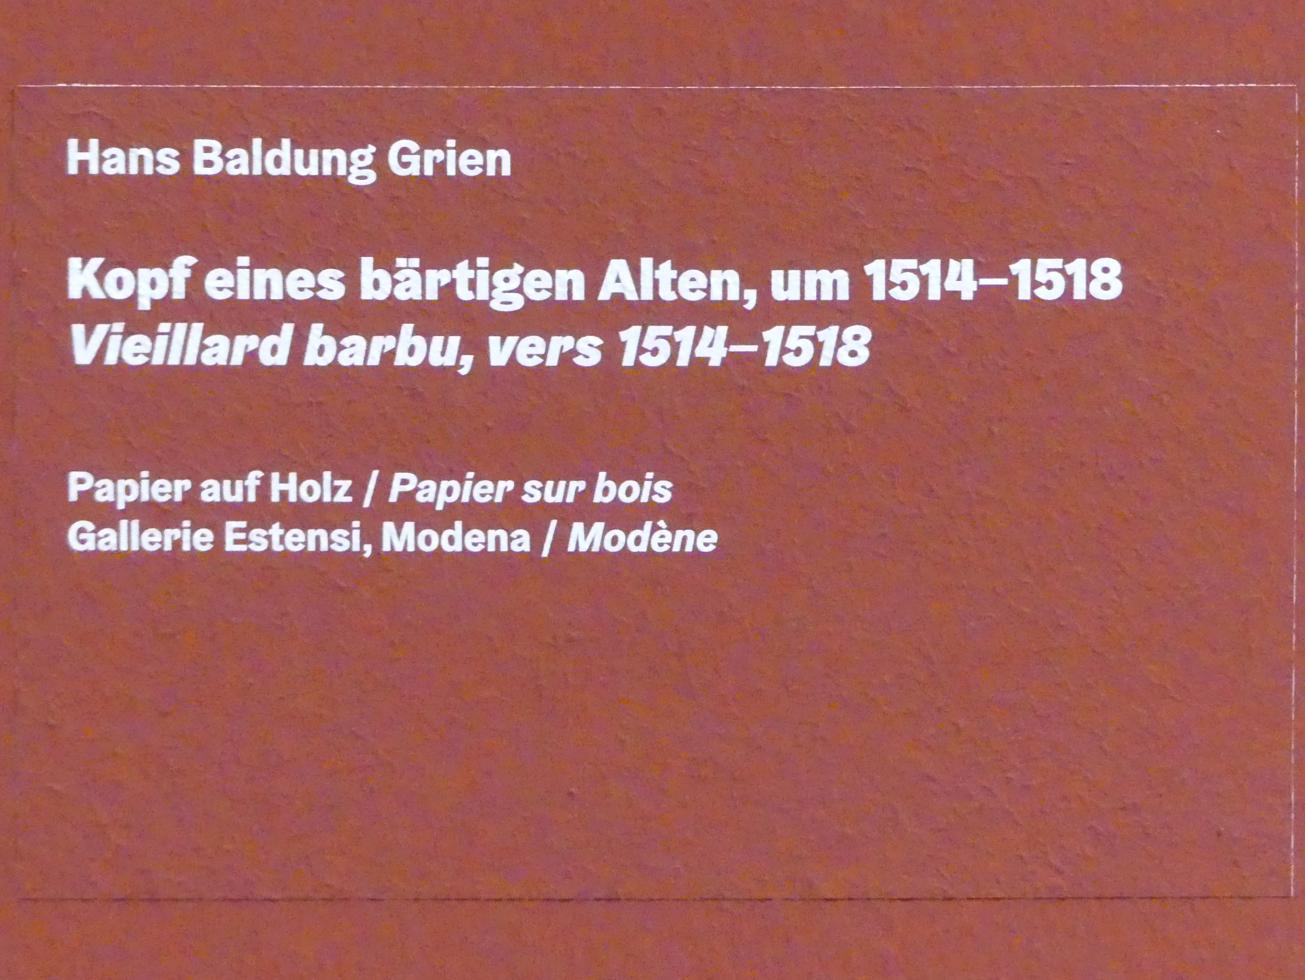 Hans Baldung Grien (1500–1544), Kopf eines bärtigen Mannes, Karlsruhe, Staatliche Kunsthalle, Ausstellung "Hans Baldung Grien, heilig | unheilig", Saal 9, um 1514–1518, Bild 2/2